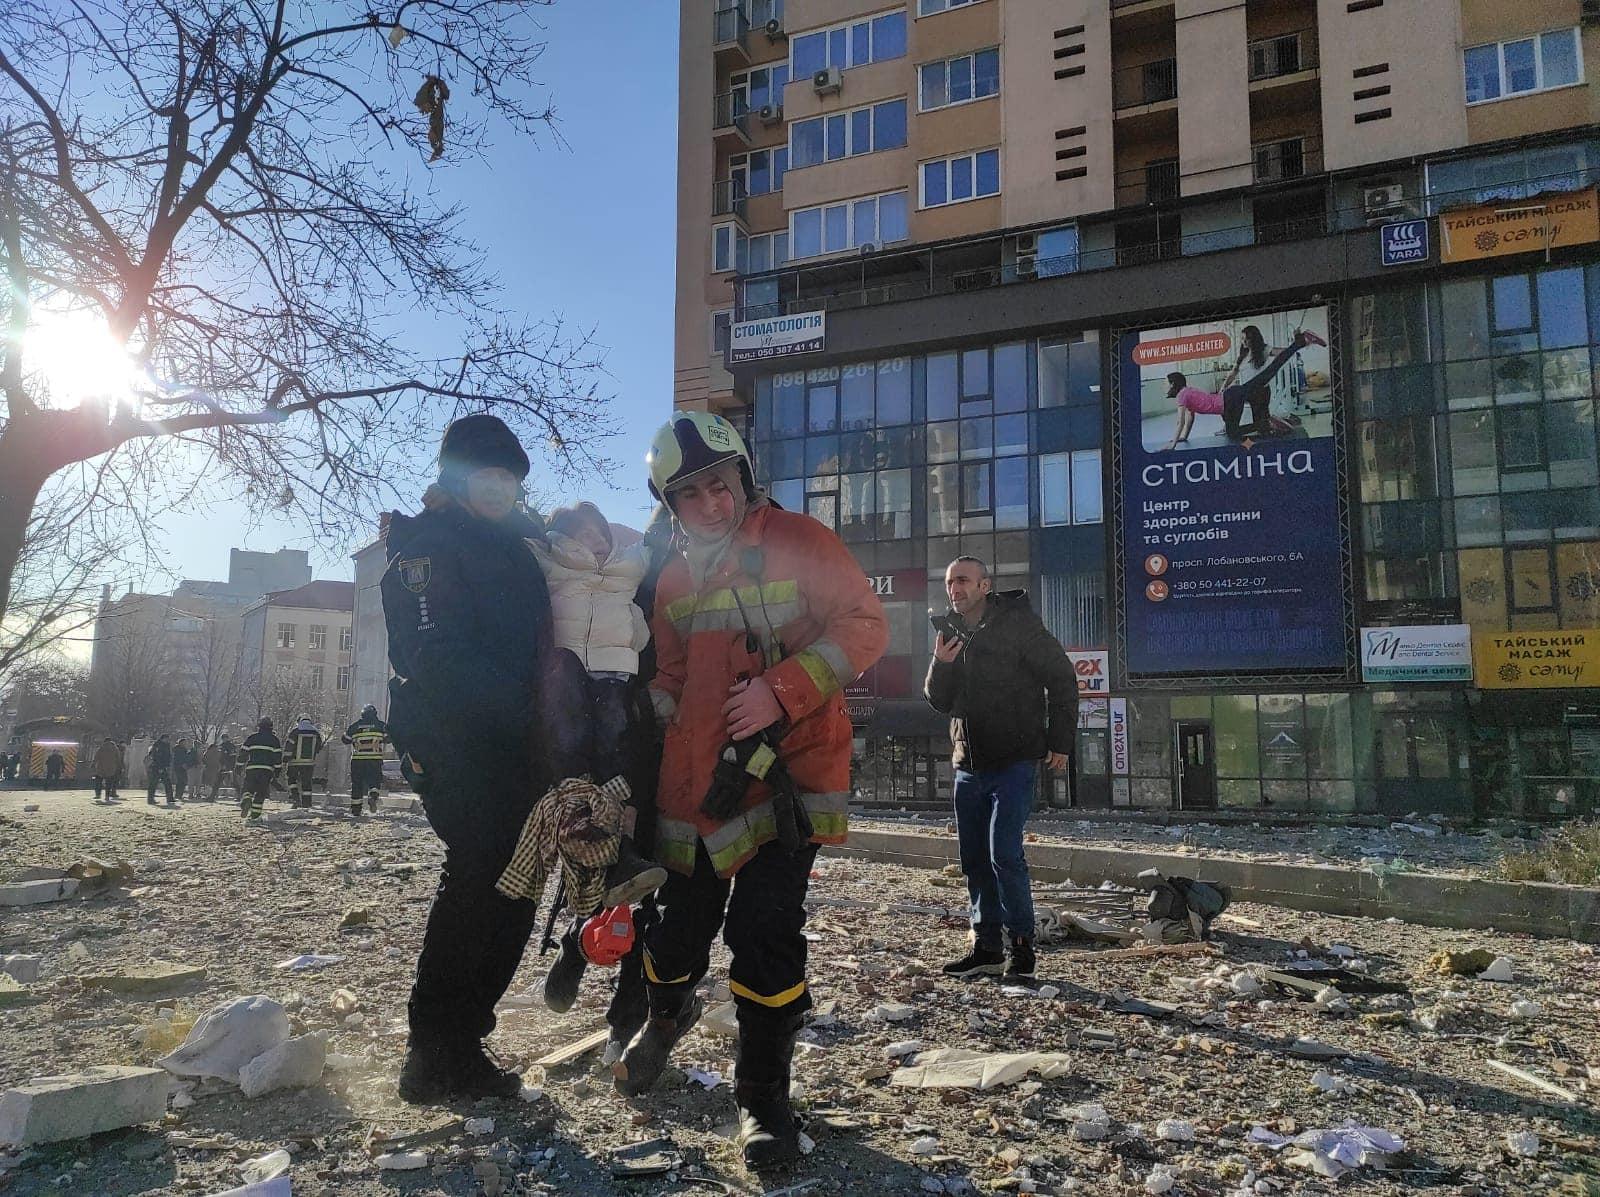 Pompierii salvează, dintre dărâmături, o femeie rănită, în Kiev